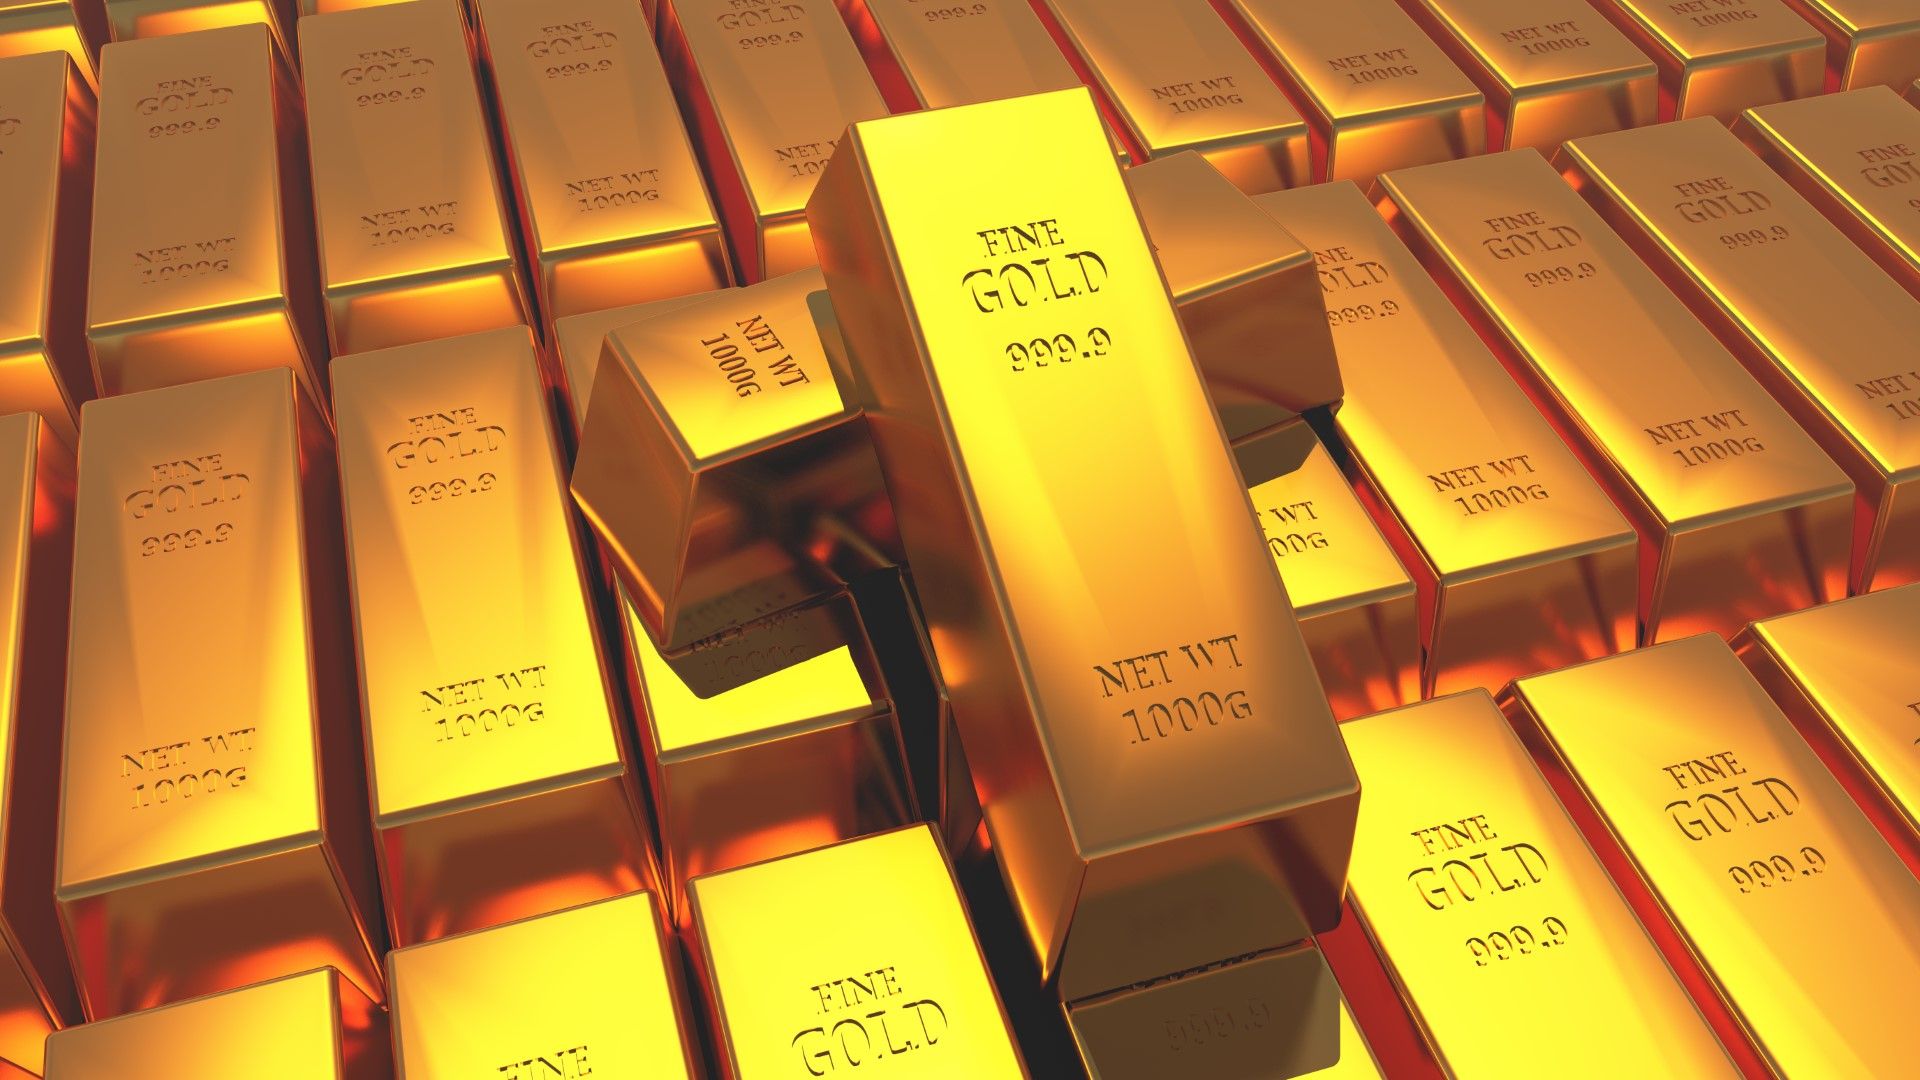 Според източниците на Блумбърг вероятно златото е било купено от компании от Турция и Обединените арабски емирства